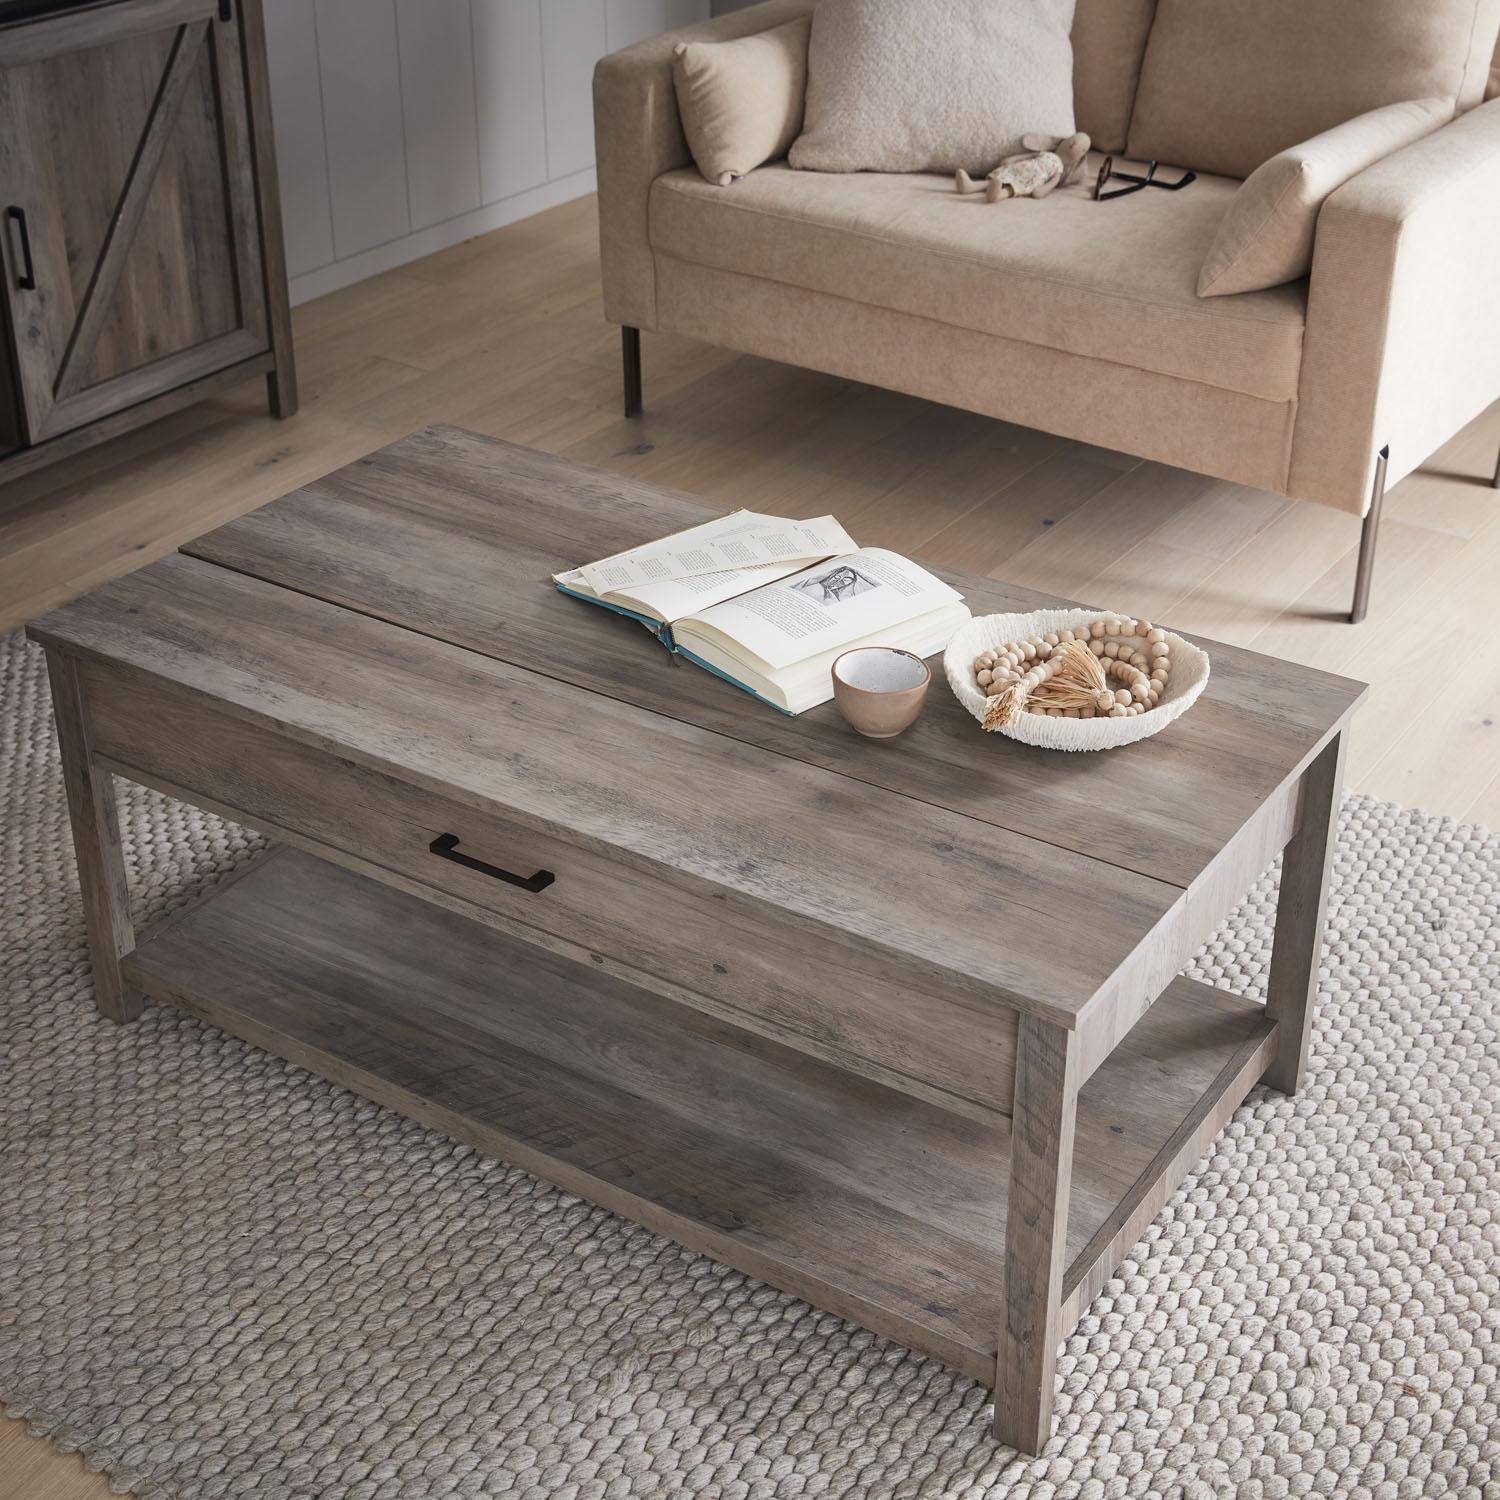 Tavolino sollevabile in legno grigio 110x59x46,5 cm - Galant - 1 vano portaoggetti Photo6